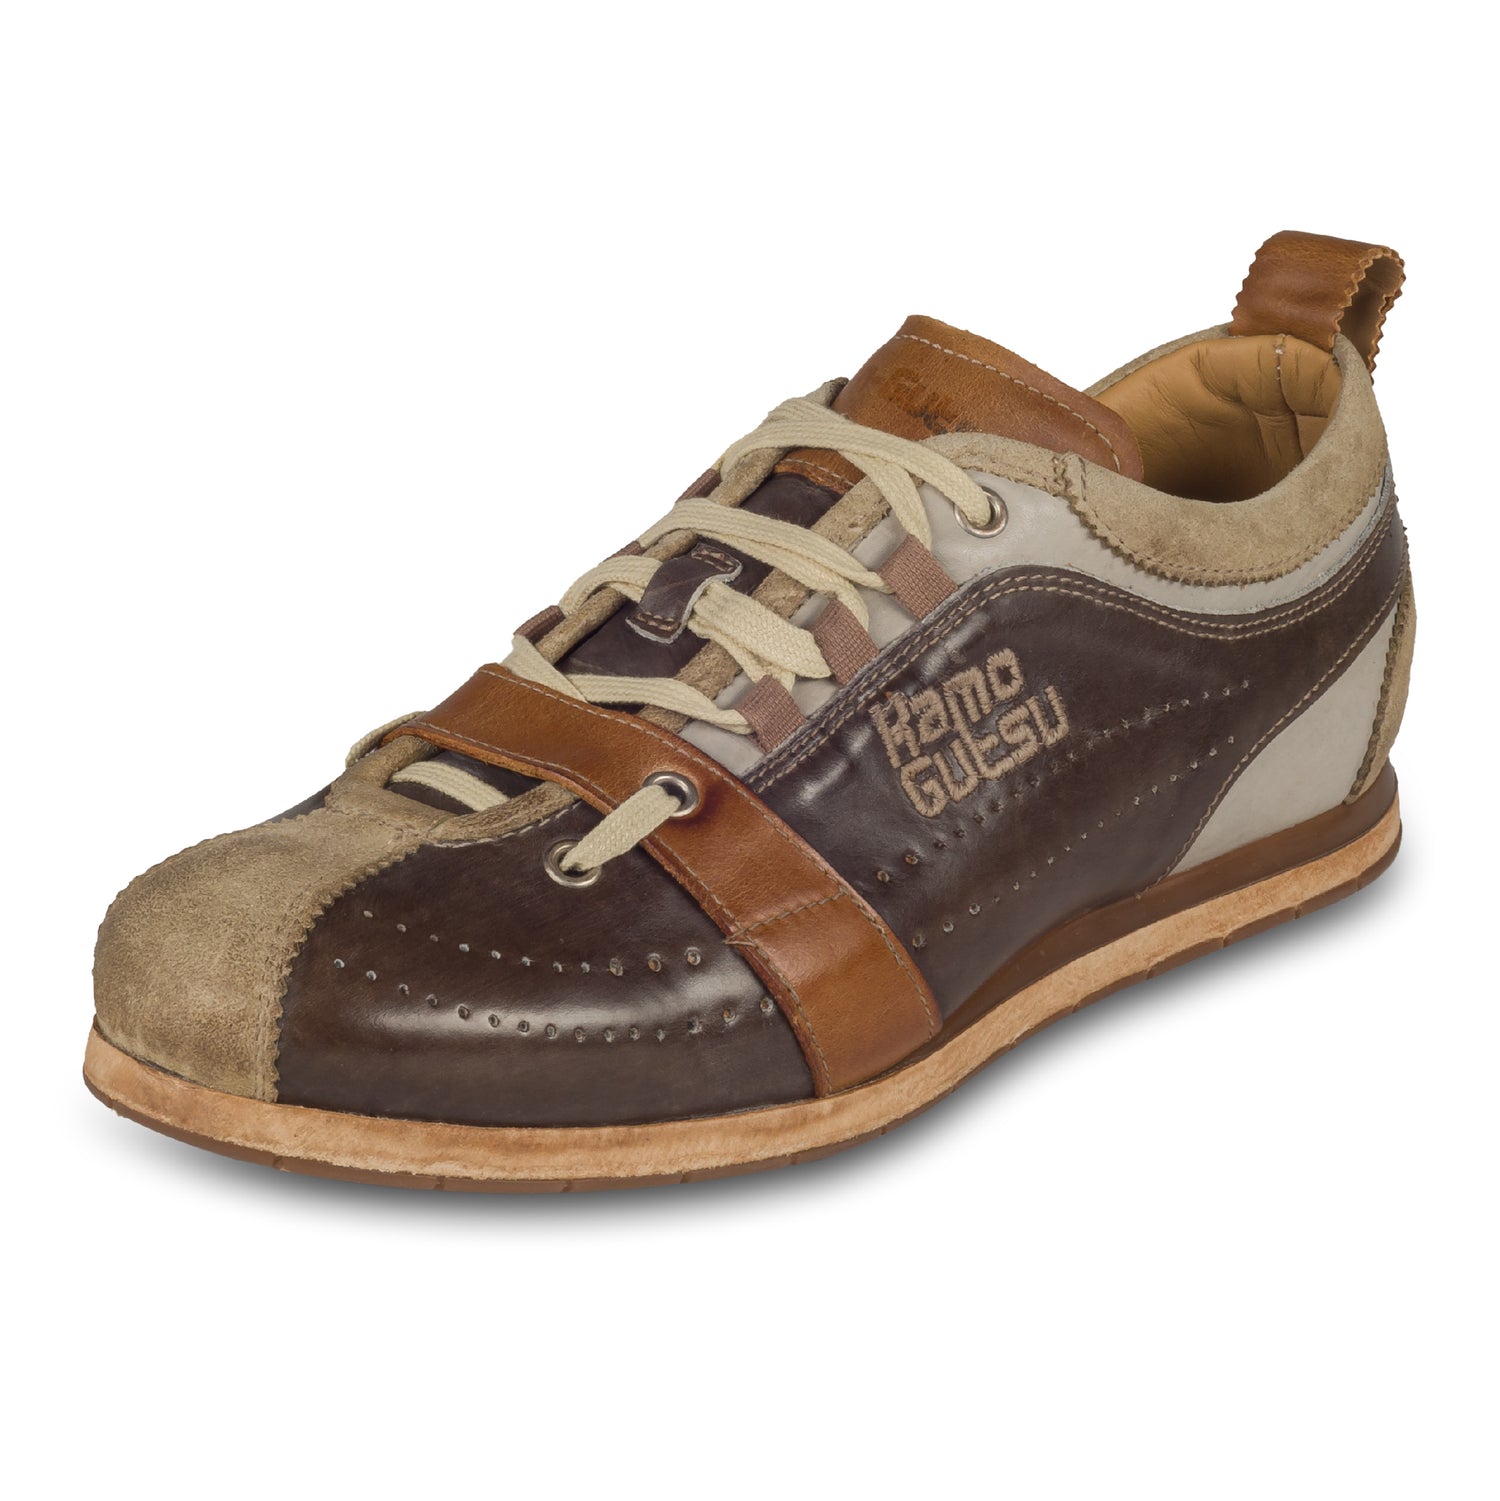 KAMO-GUTSU Italienische Herren Leder-Sneaker, braun, Retro-Optik. Modell TIFO-017 panna + pietra. Handgefertigt. Schräge Ansicht linker Schuh. Bei Sisento.